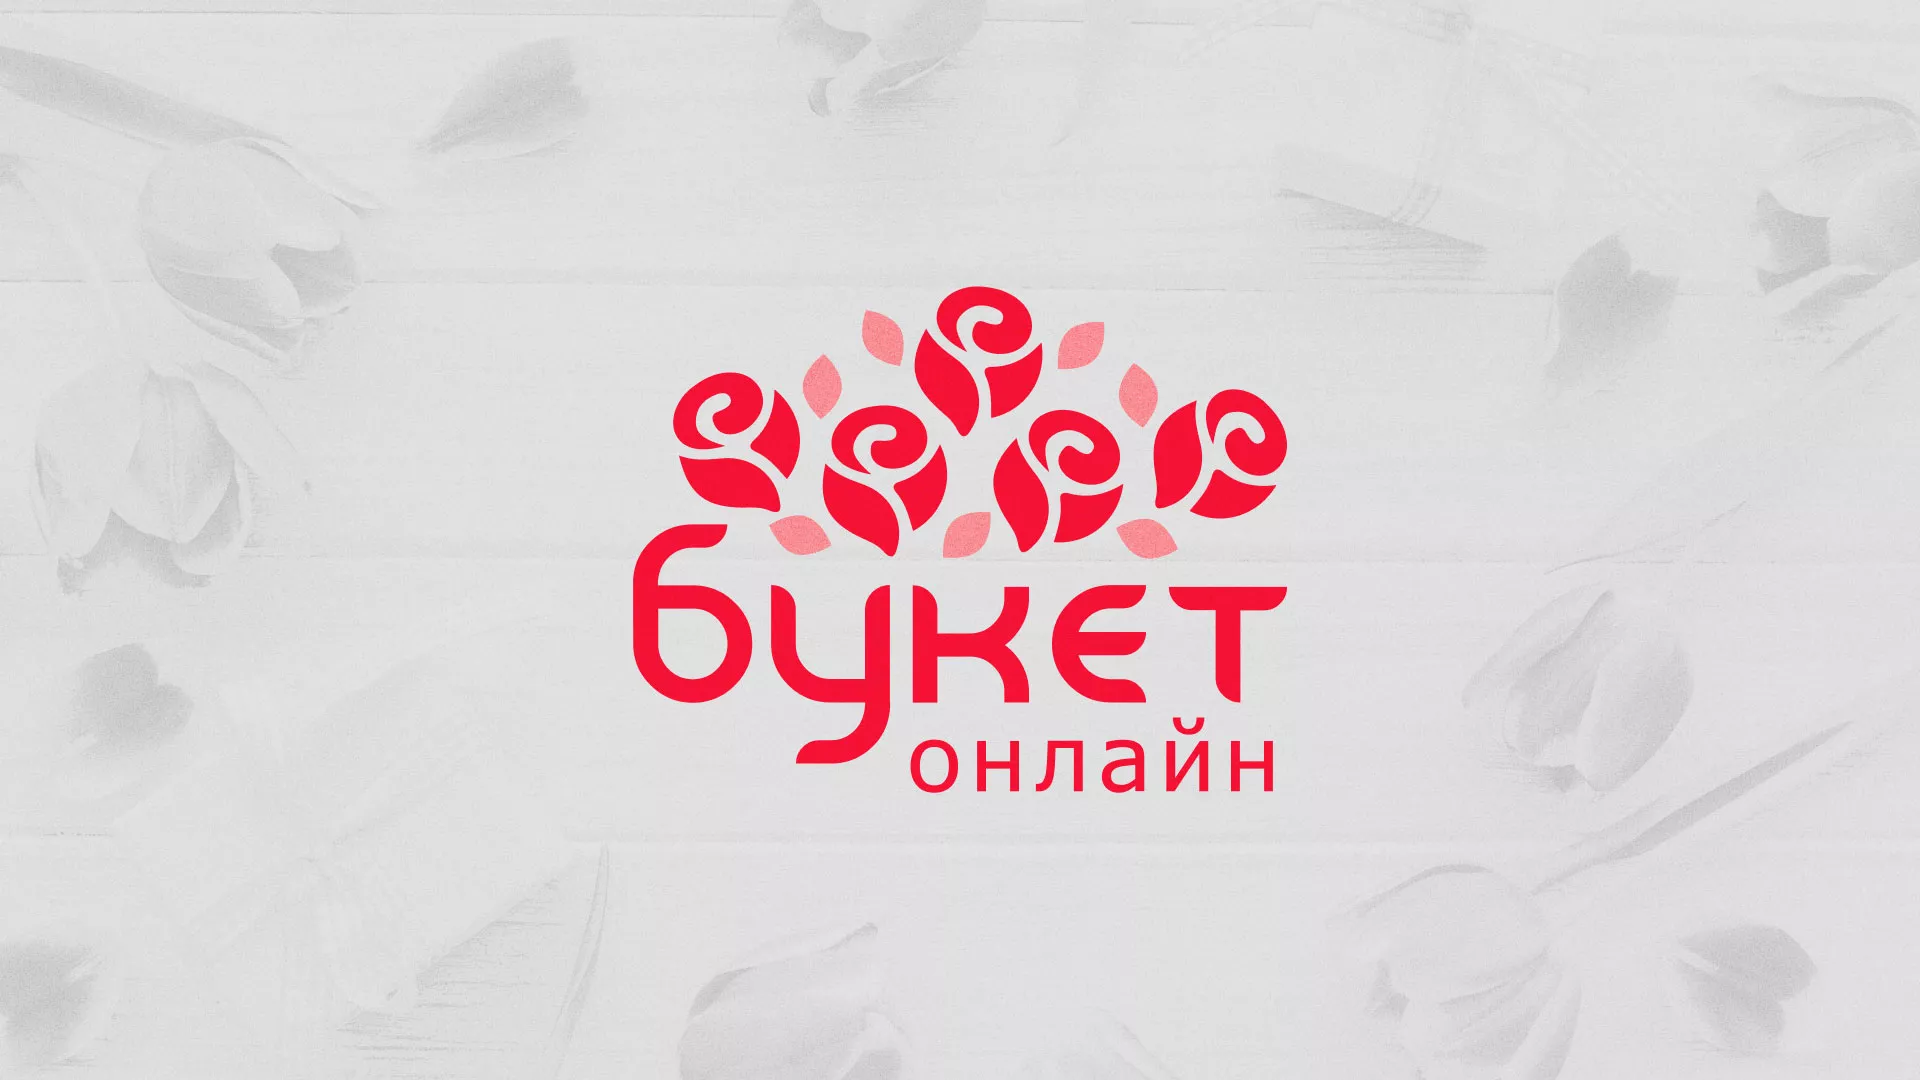 Создание интернет-магазина «Букет-онлайн» по цветам в Волгограде